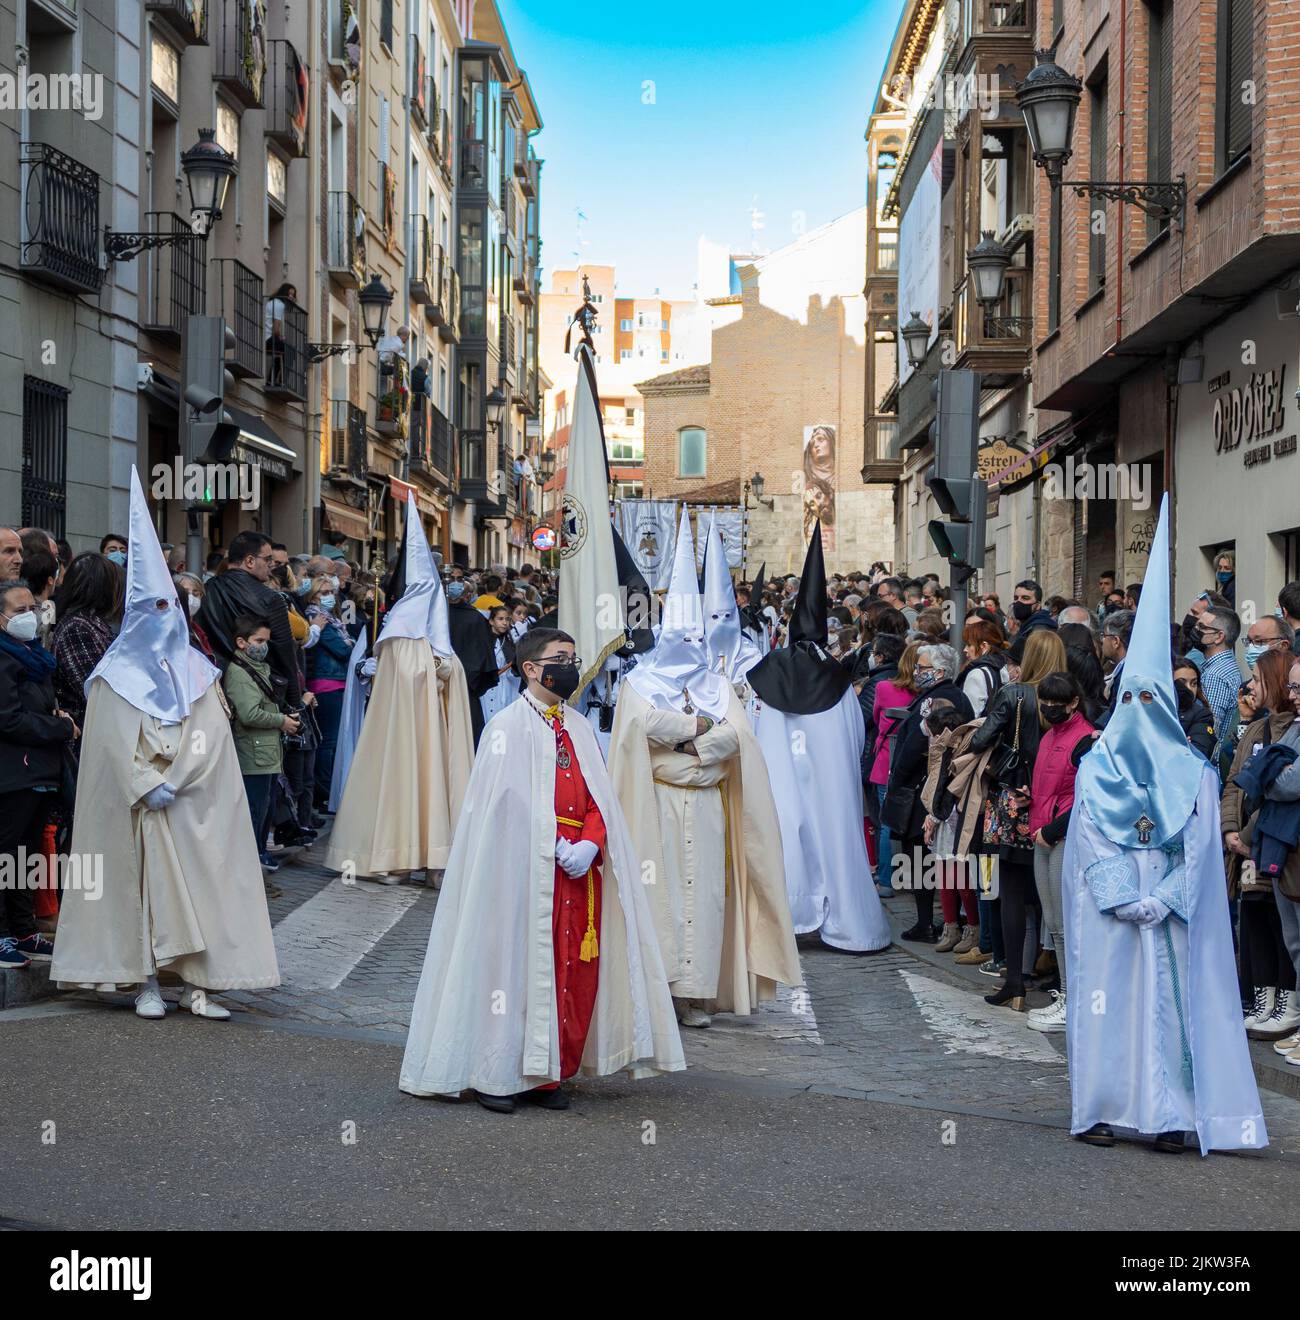 Semana santa Valladolid procesión de amor y misericordia el domingo de ramos, España Stock Photo